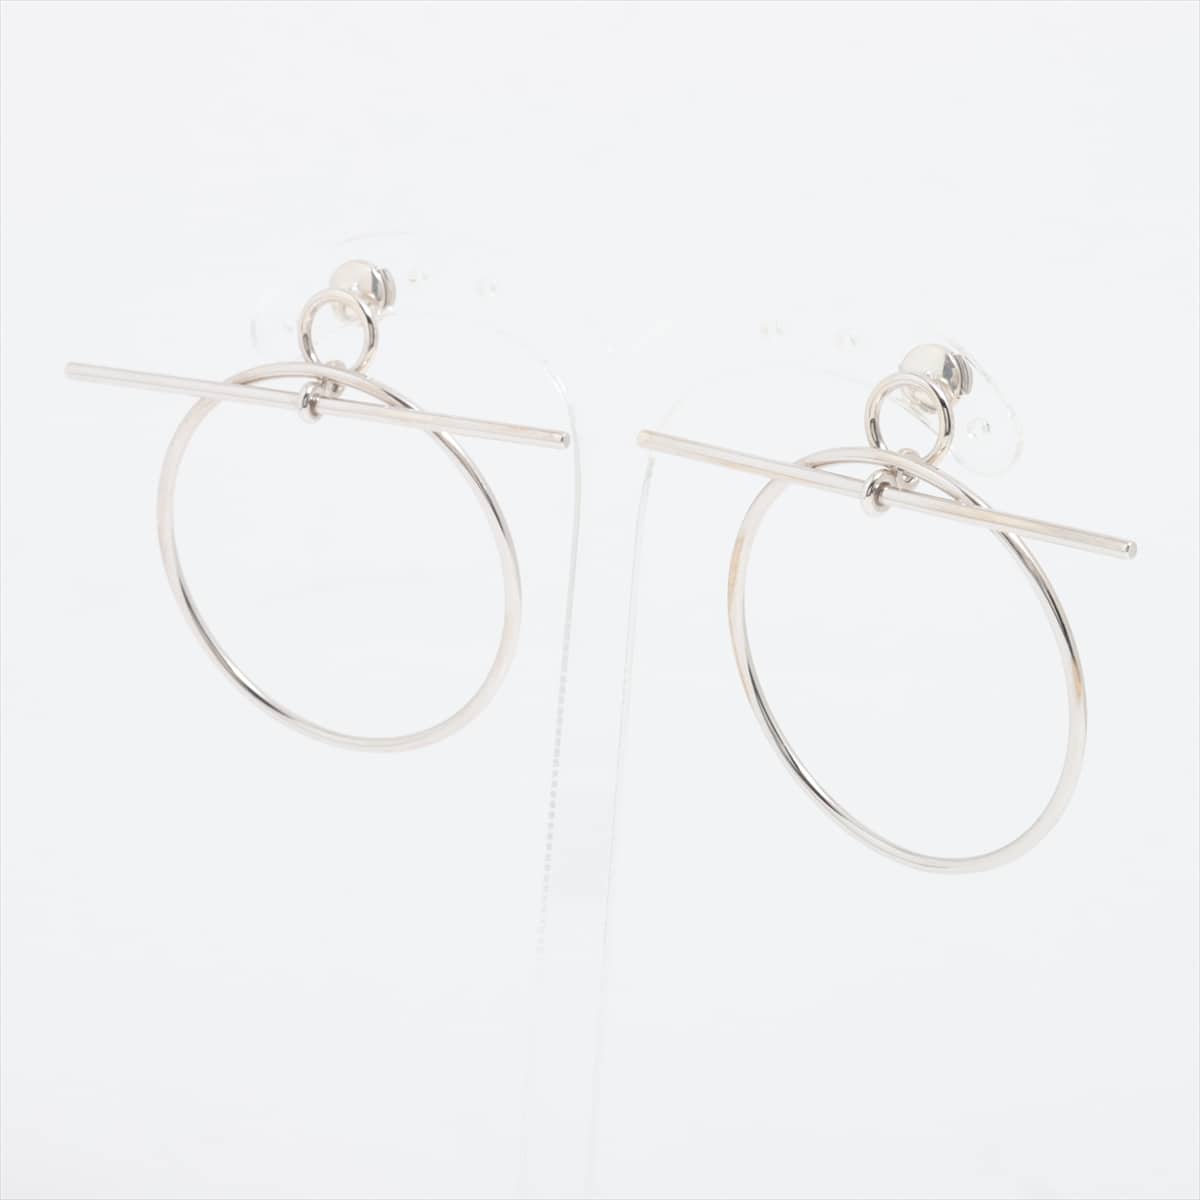 Hermès Loop Medium Piercing jewelry (for both ears) 925 925g Silver